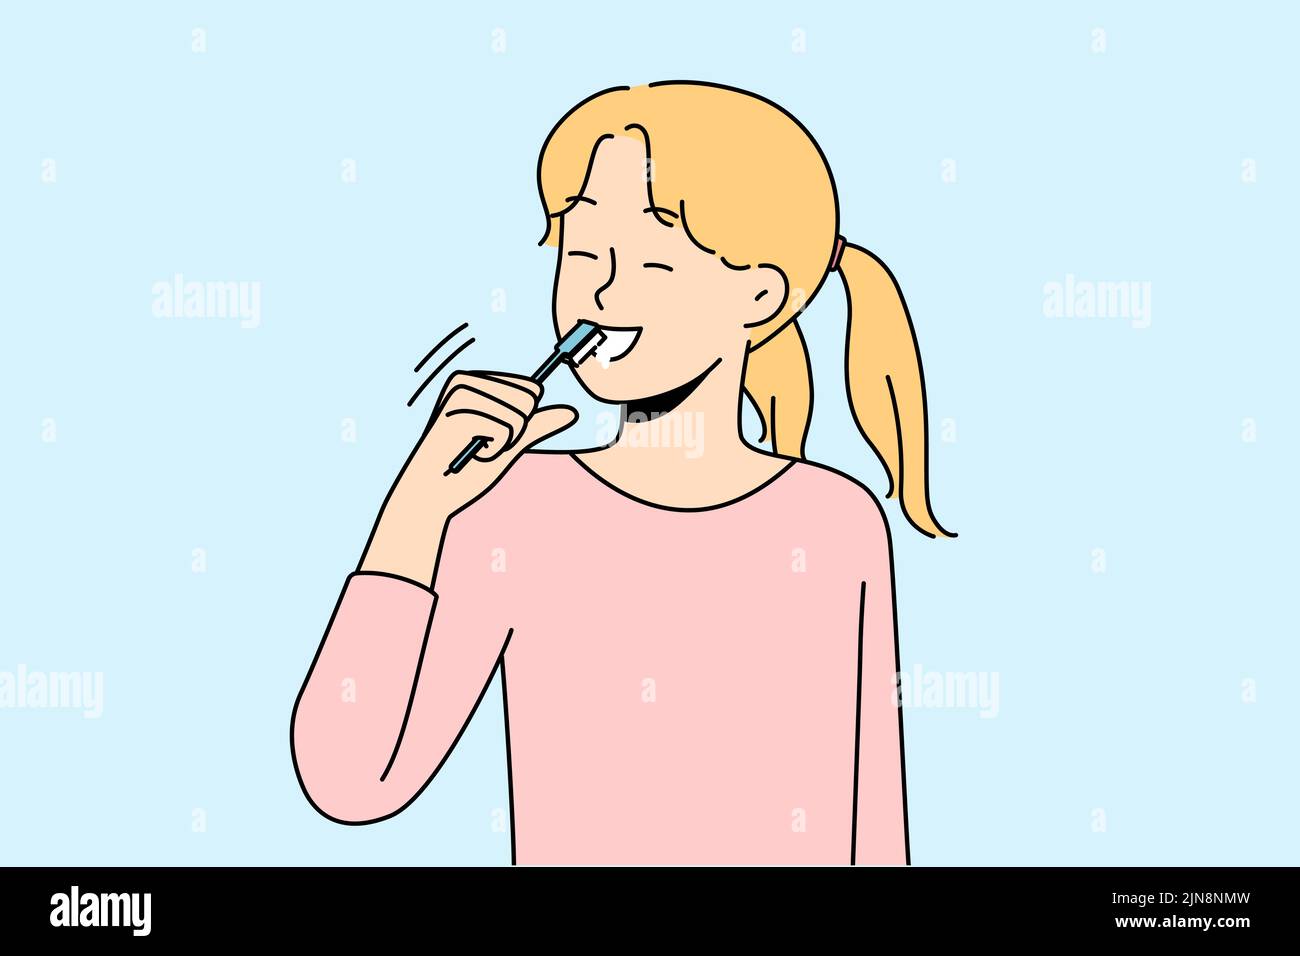 Une fille souriante se brossant les dents s'occupe de l'hygiène bucco-dentaire. Happy Child matin routine quotidienne nettoyer les dents. Soins de santé et garde d'enfants. Illustration vectorielle. Illustration de Vecteur